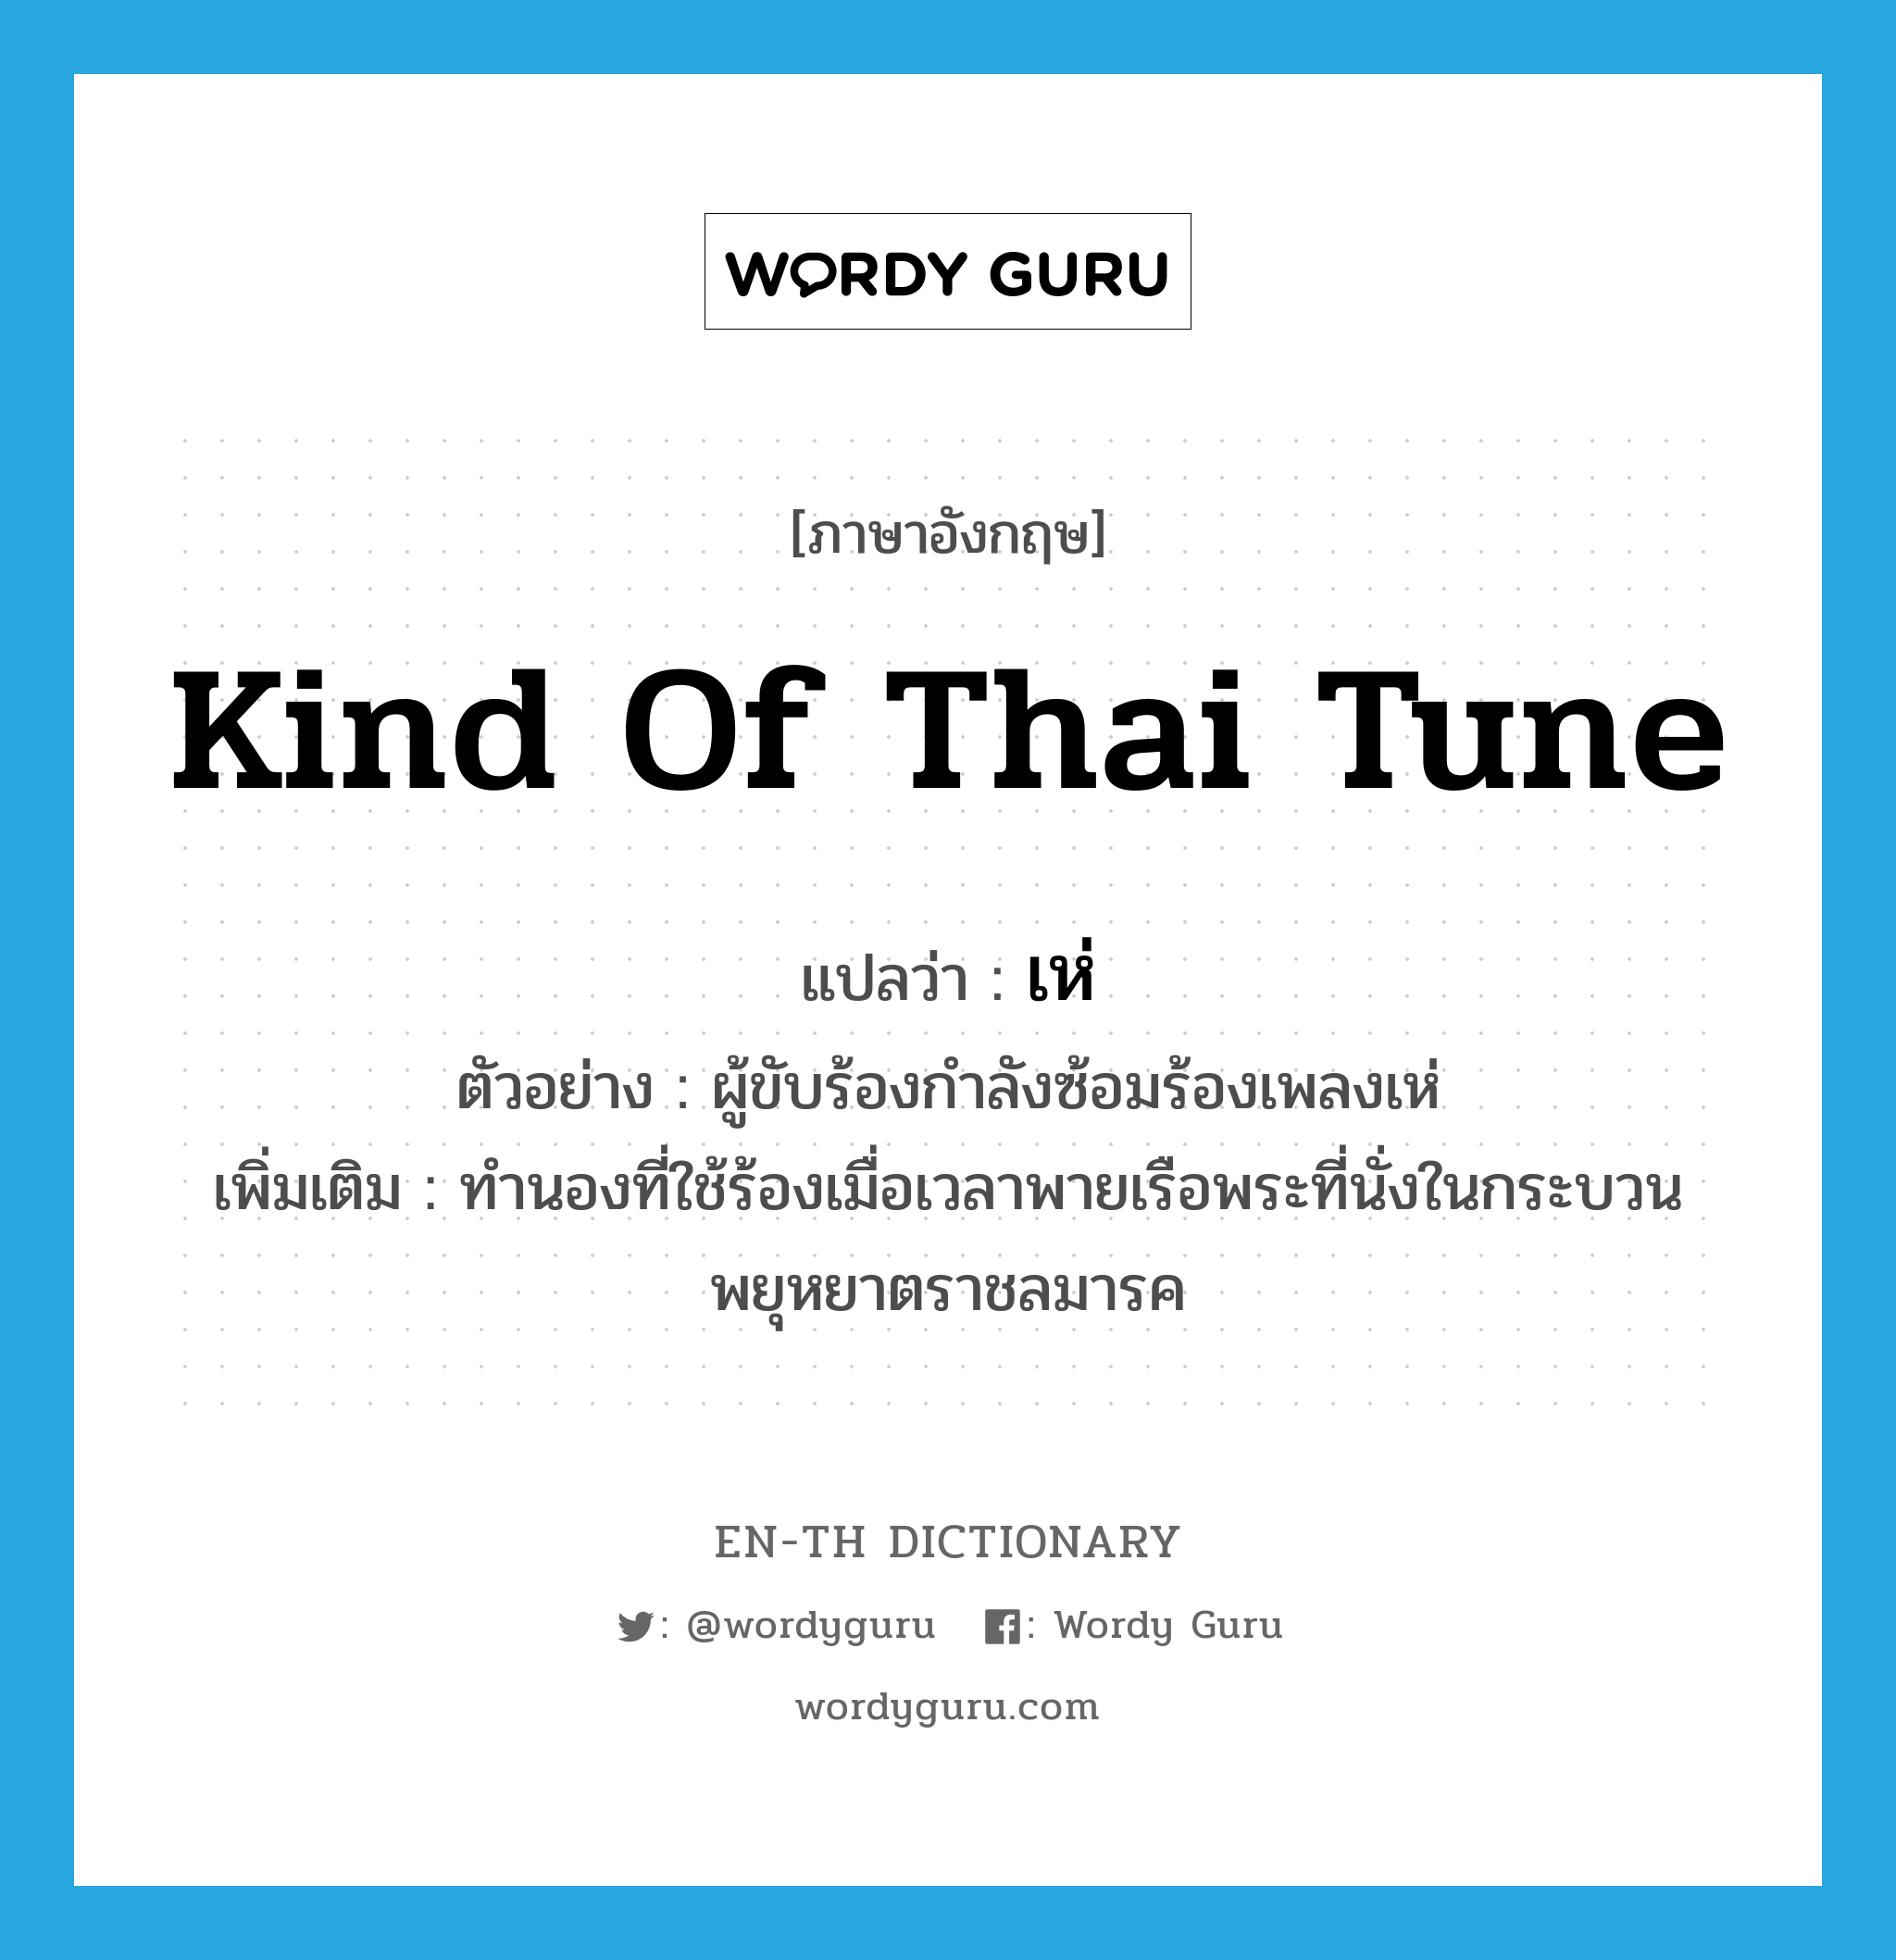 kind of Thai tune แปลว่า?, คำศัพท์ภาษาอังกฤษ kind of Thai tune แปลว่า เห่ ประเภท N ตัวอย่าง ผู้ขับร้องกำลังซ้อมร้องเพลงเห่ เพิ่มเติม ทำนองที่ใช้ร้องเมื่อเวลาพายเรือพระที่นั่งในกระบวนพยุหยาตราชลมารค หมวด N